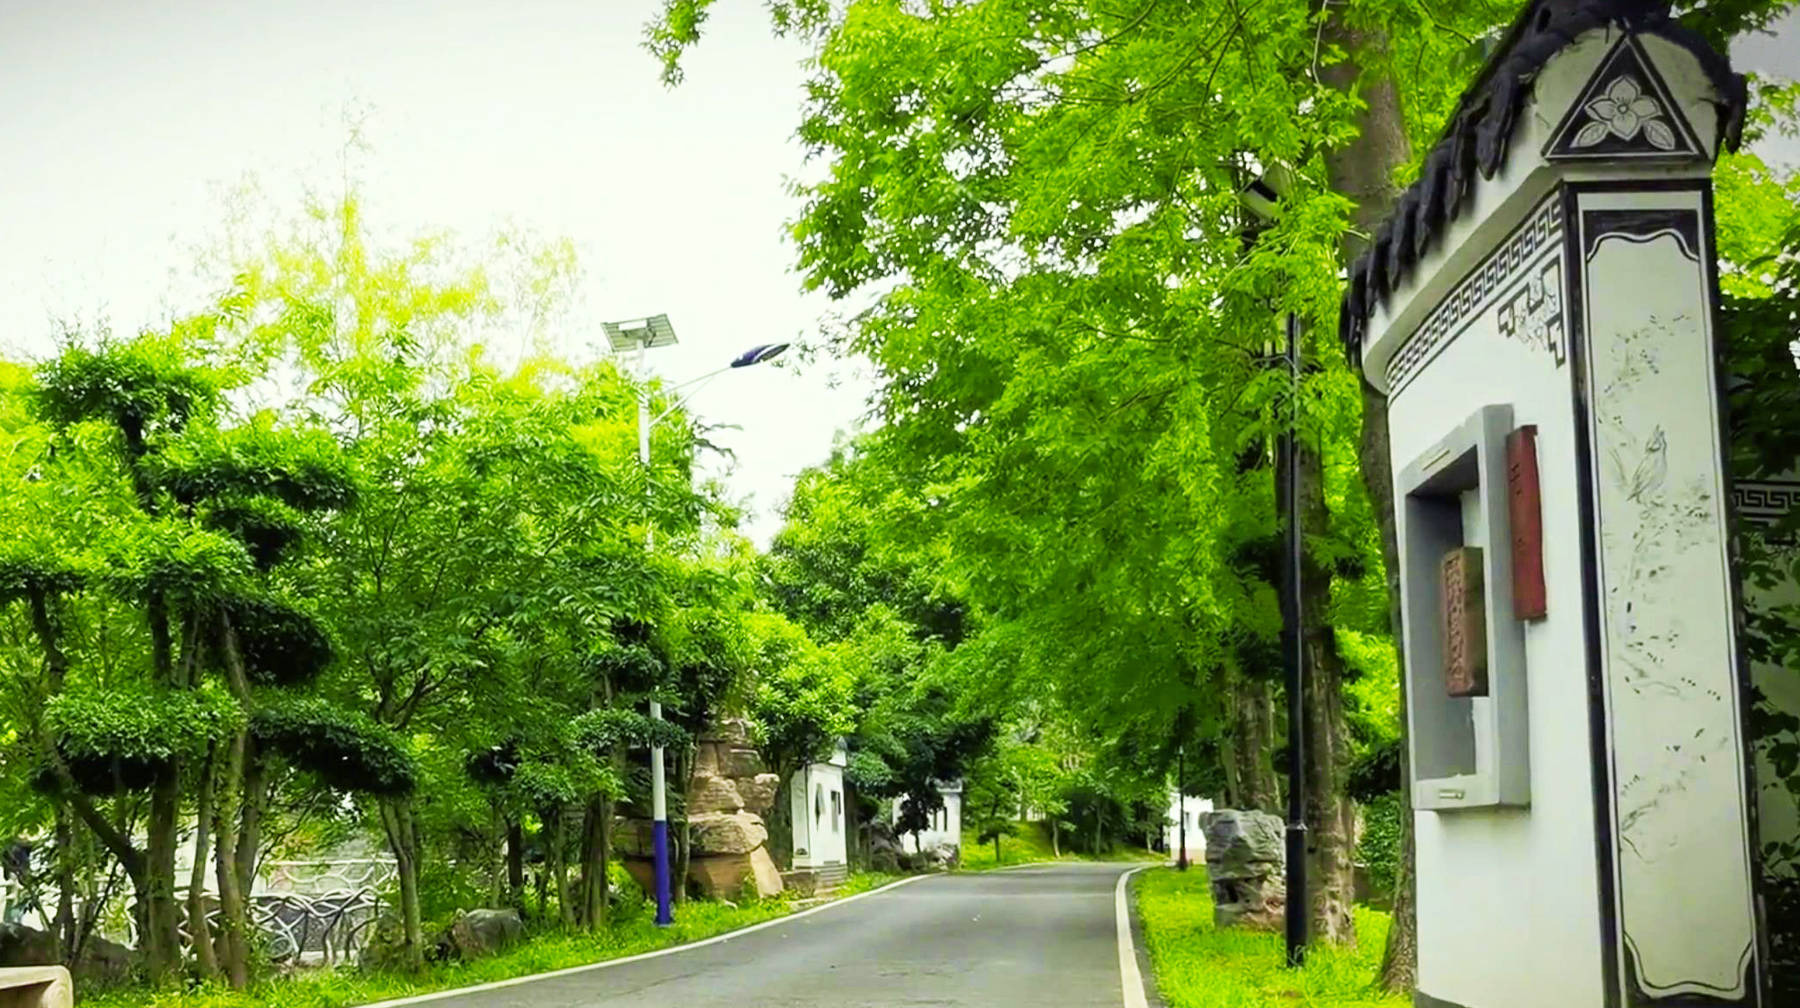 原创在武汉郊区发现一座古典园林酷似江南水乡意境随拍风光美如画